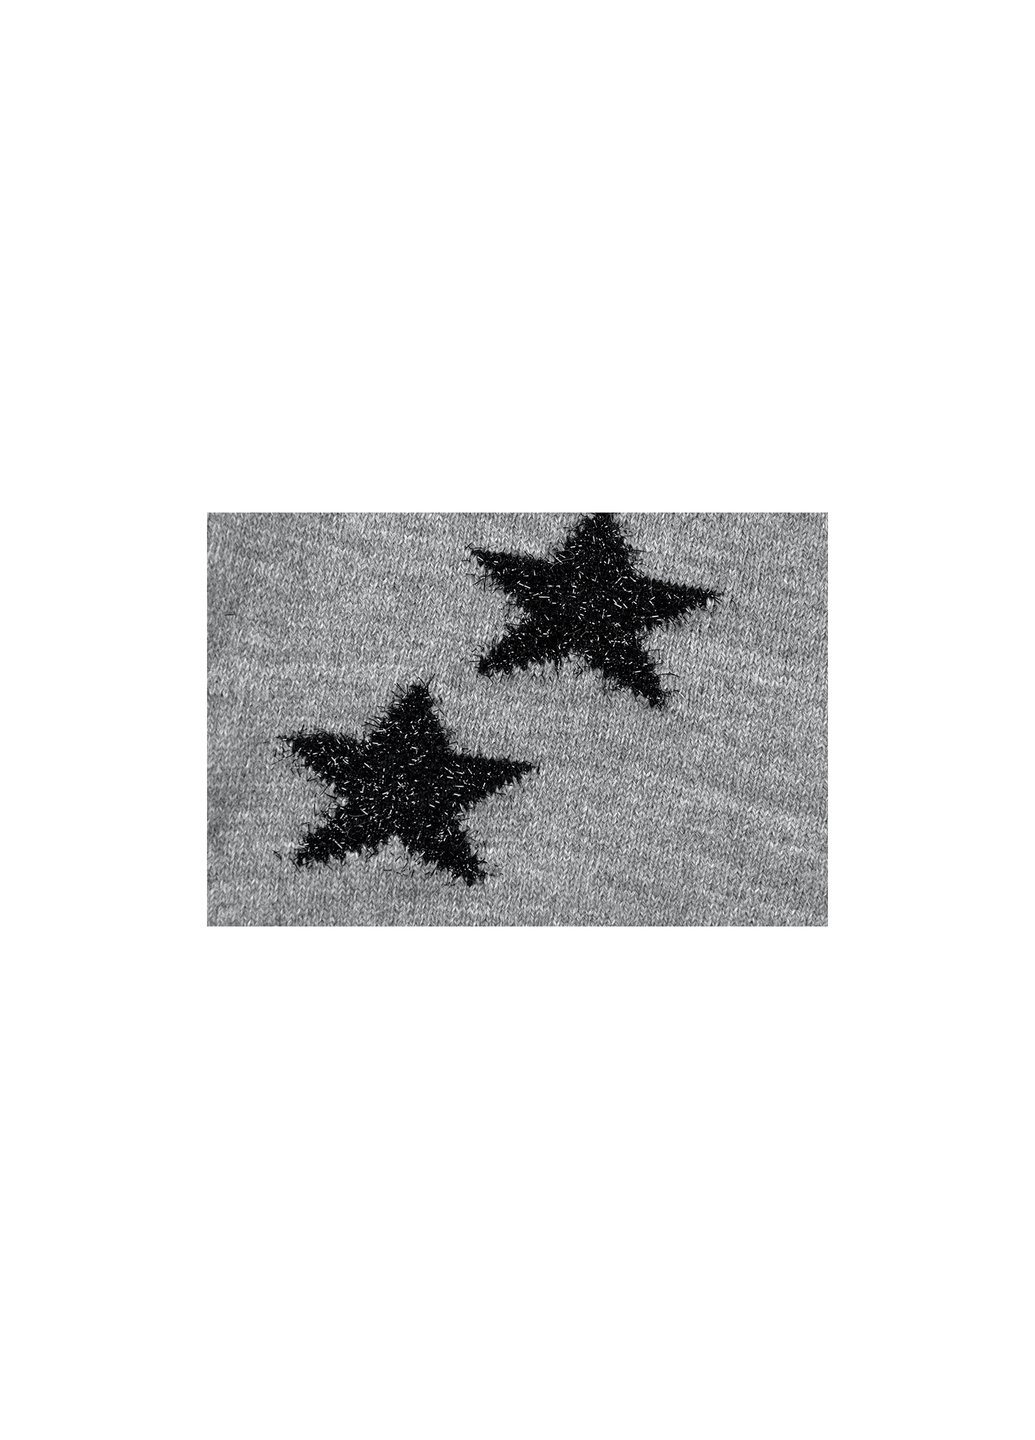 Кофта джемпер серый меланж со звездочками (T-104-110G-gray) Breeze (257204582)